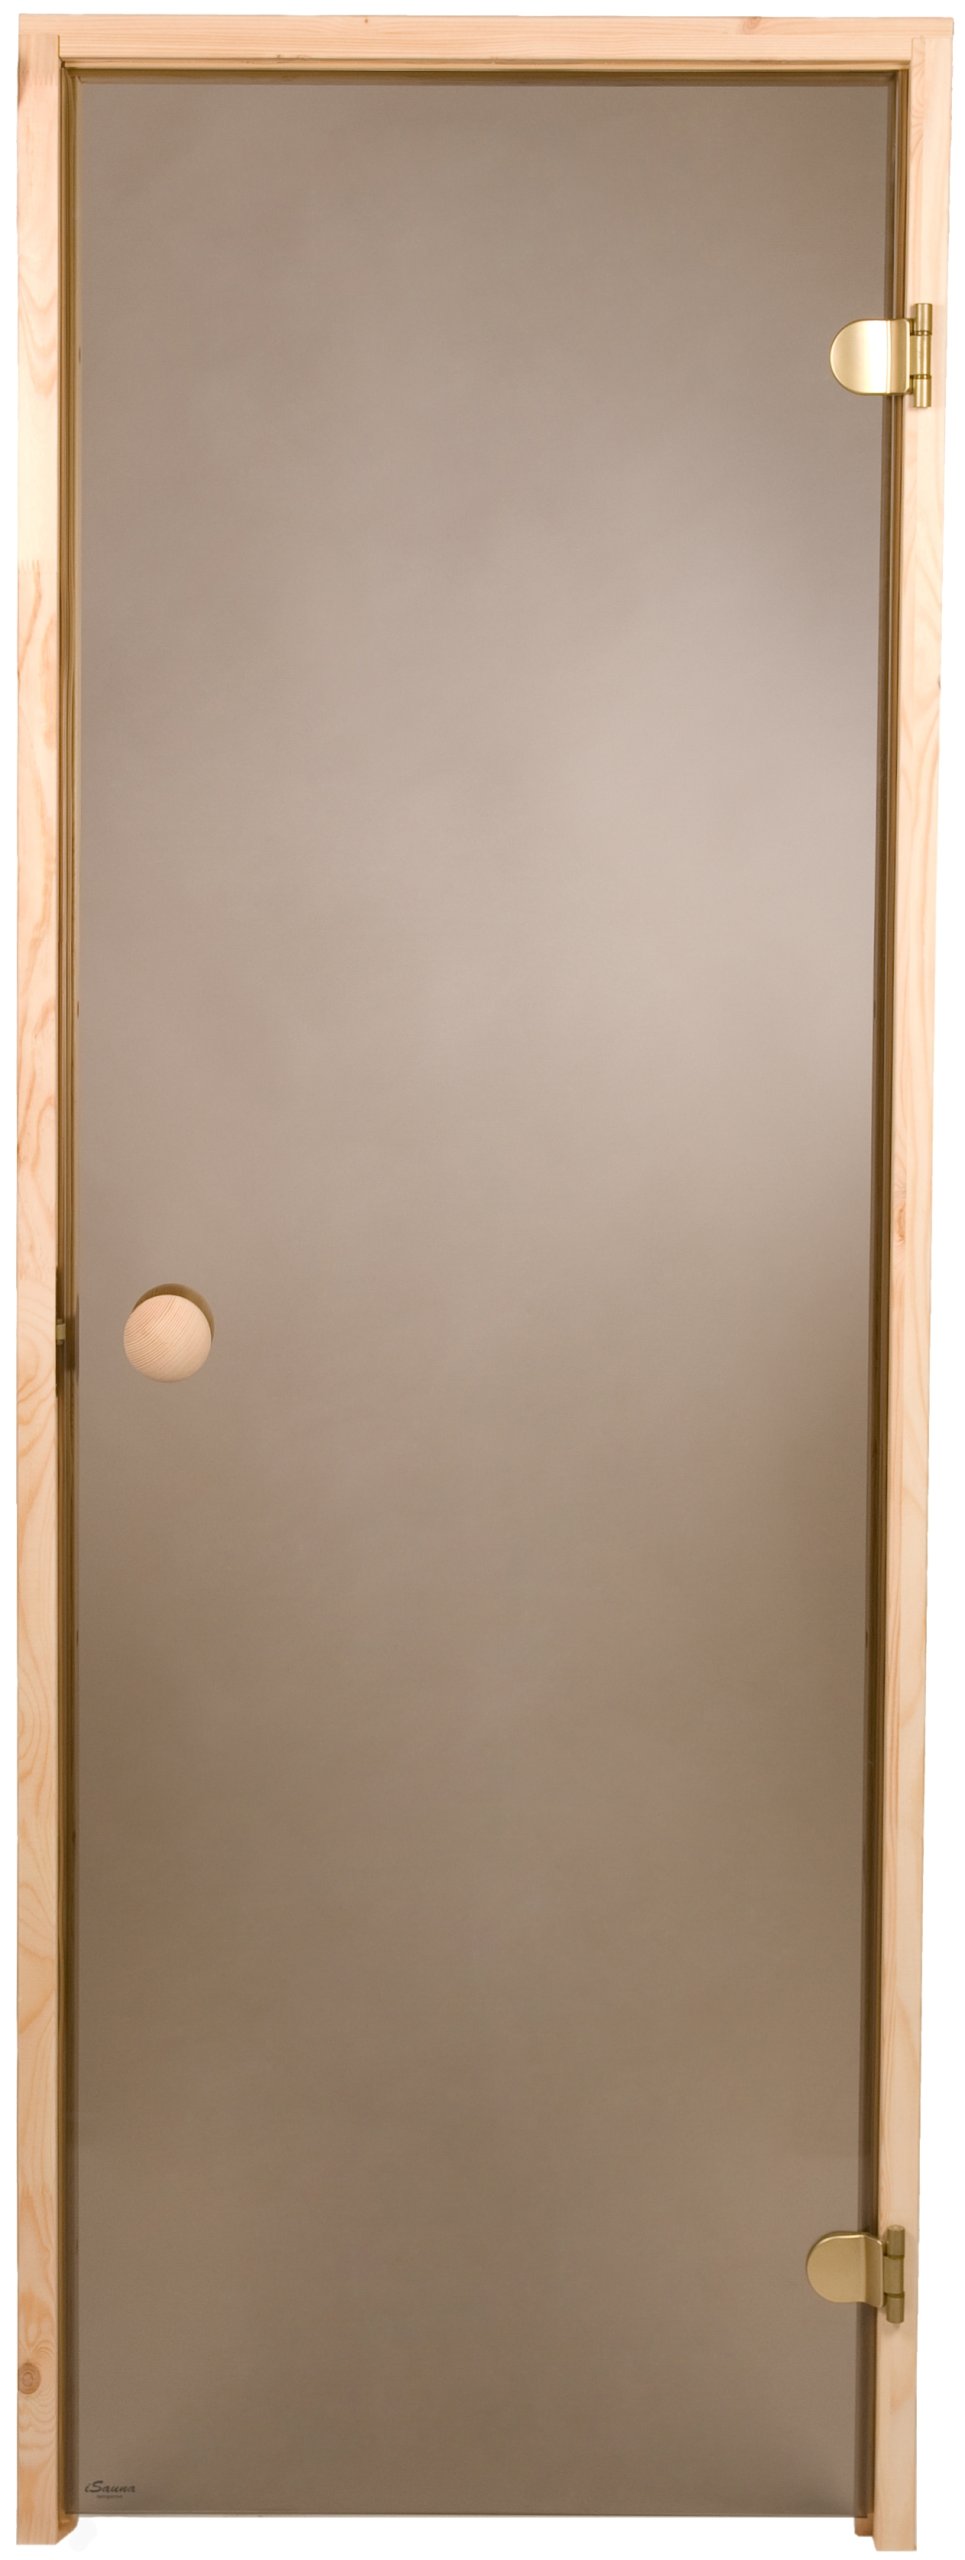 Дверь для сауны Fighter 69x189 см коричневая Сосна САУНА